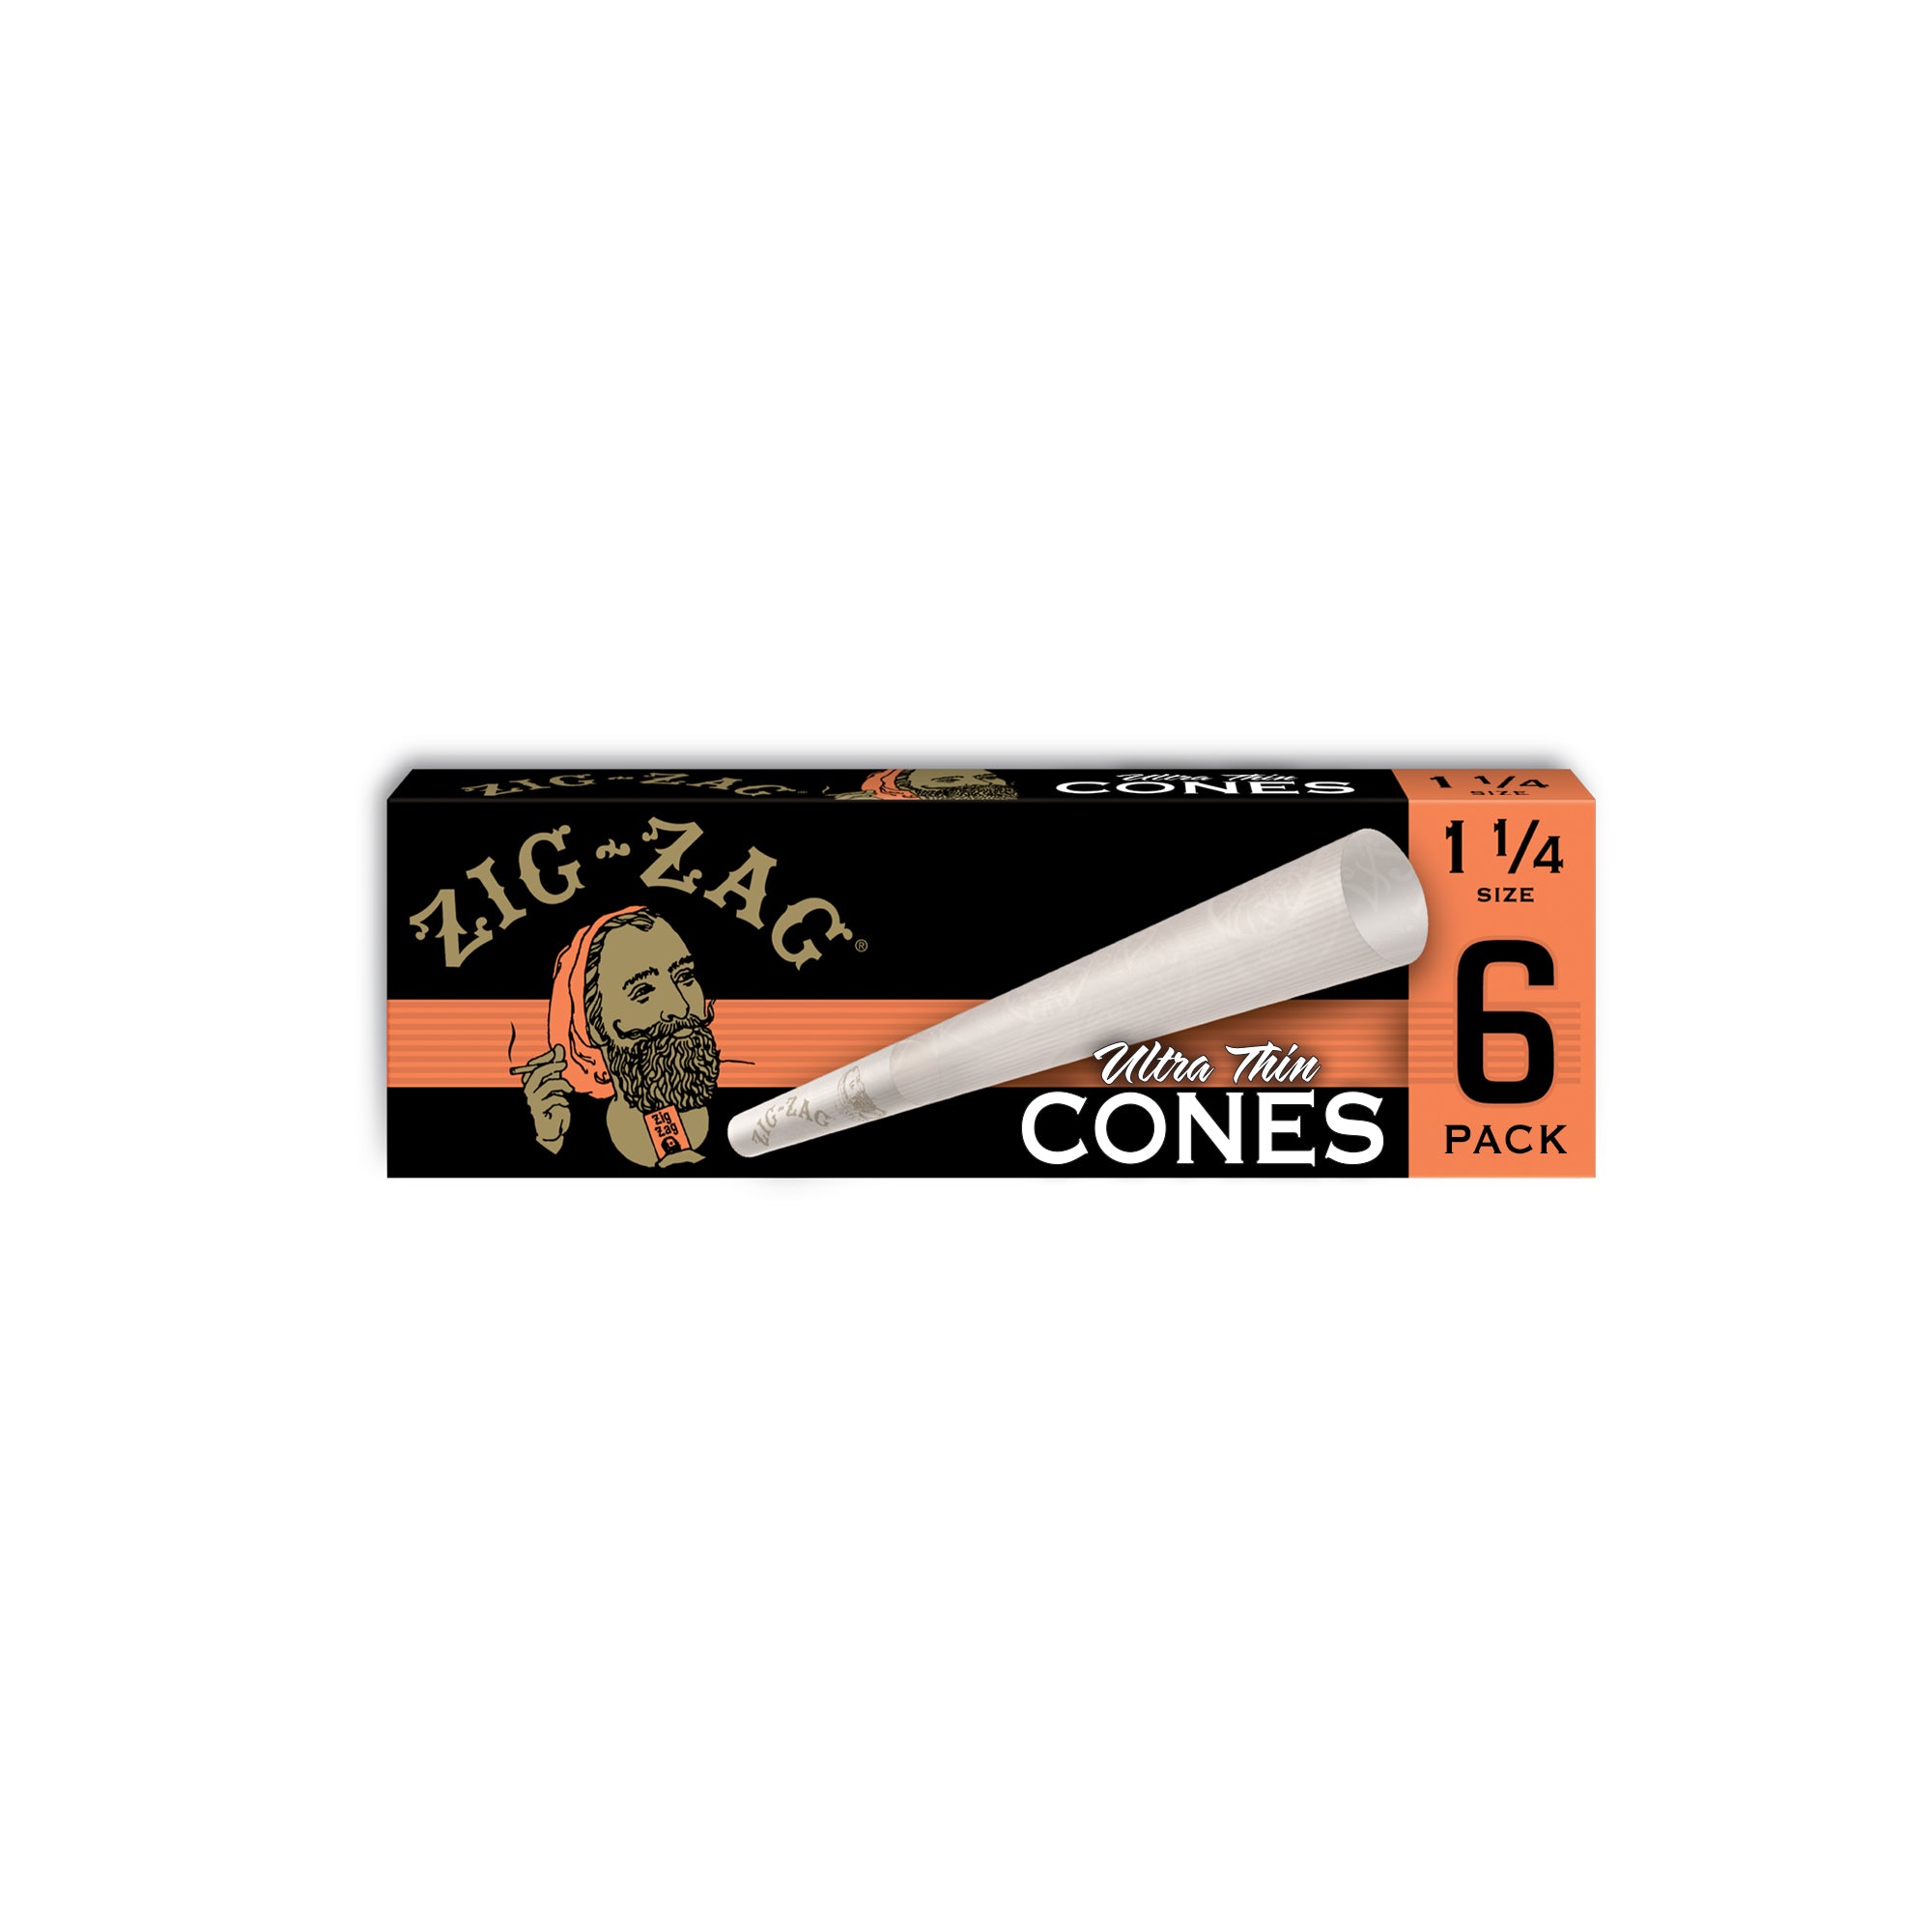 1 1/4 Size - Cones Carton